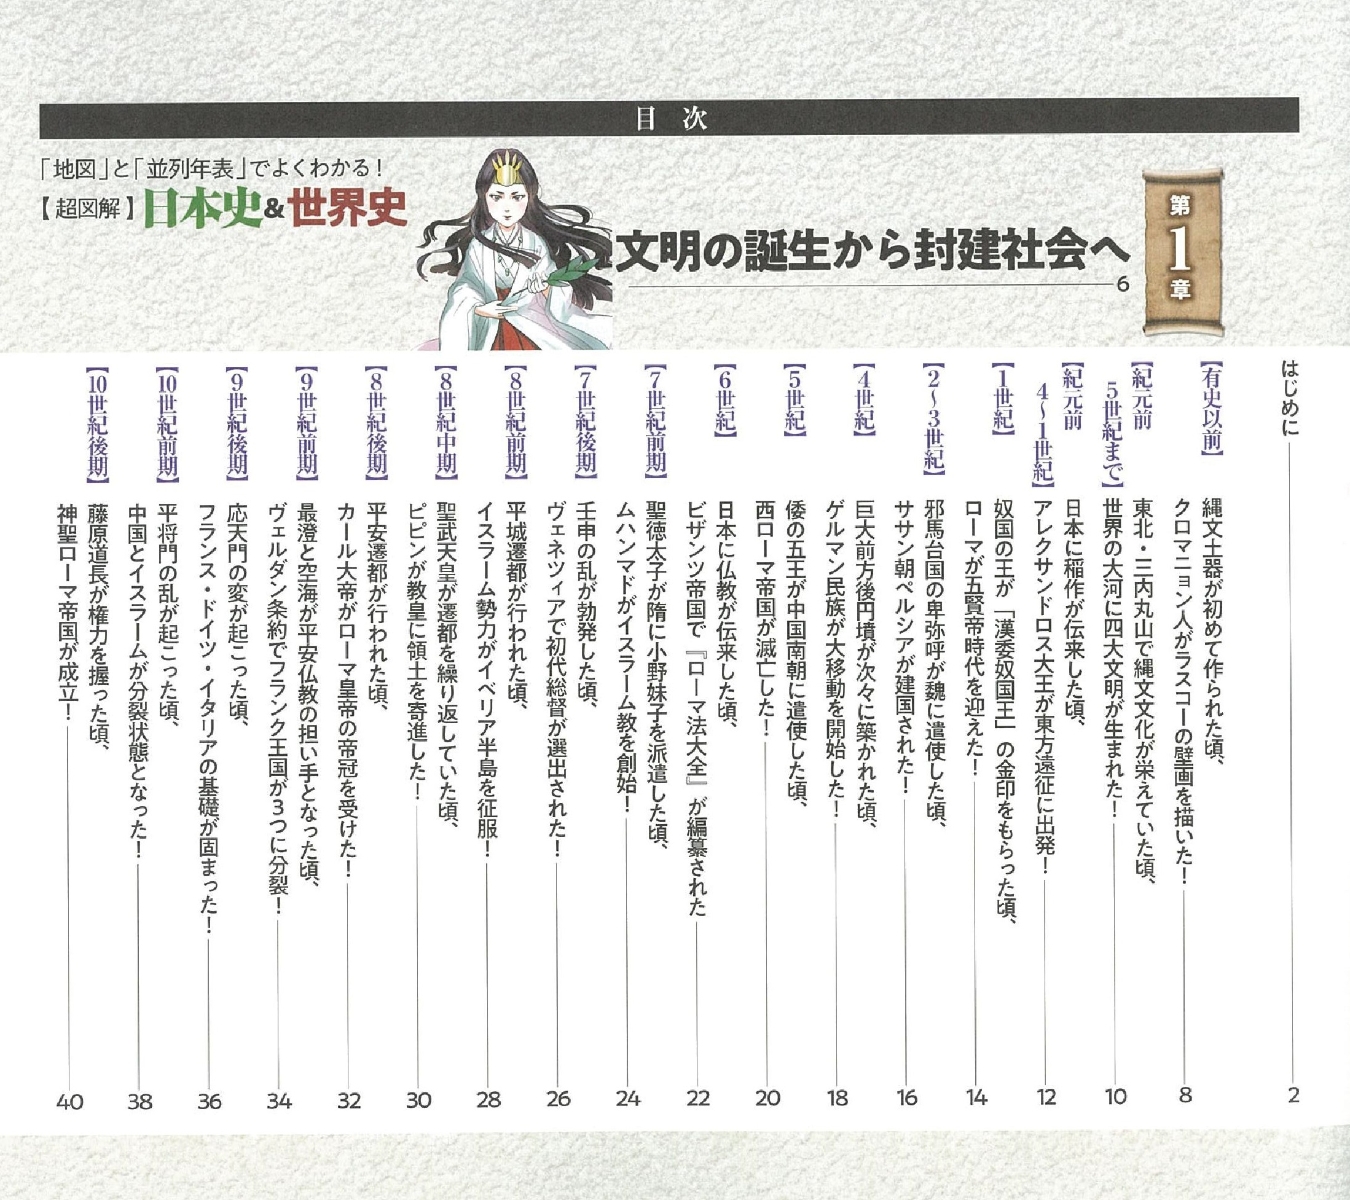 楽天ブックス 超図解 日本史 世界史 地図 と 並列年表 で